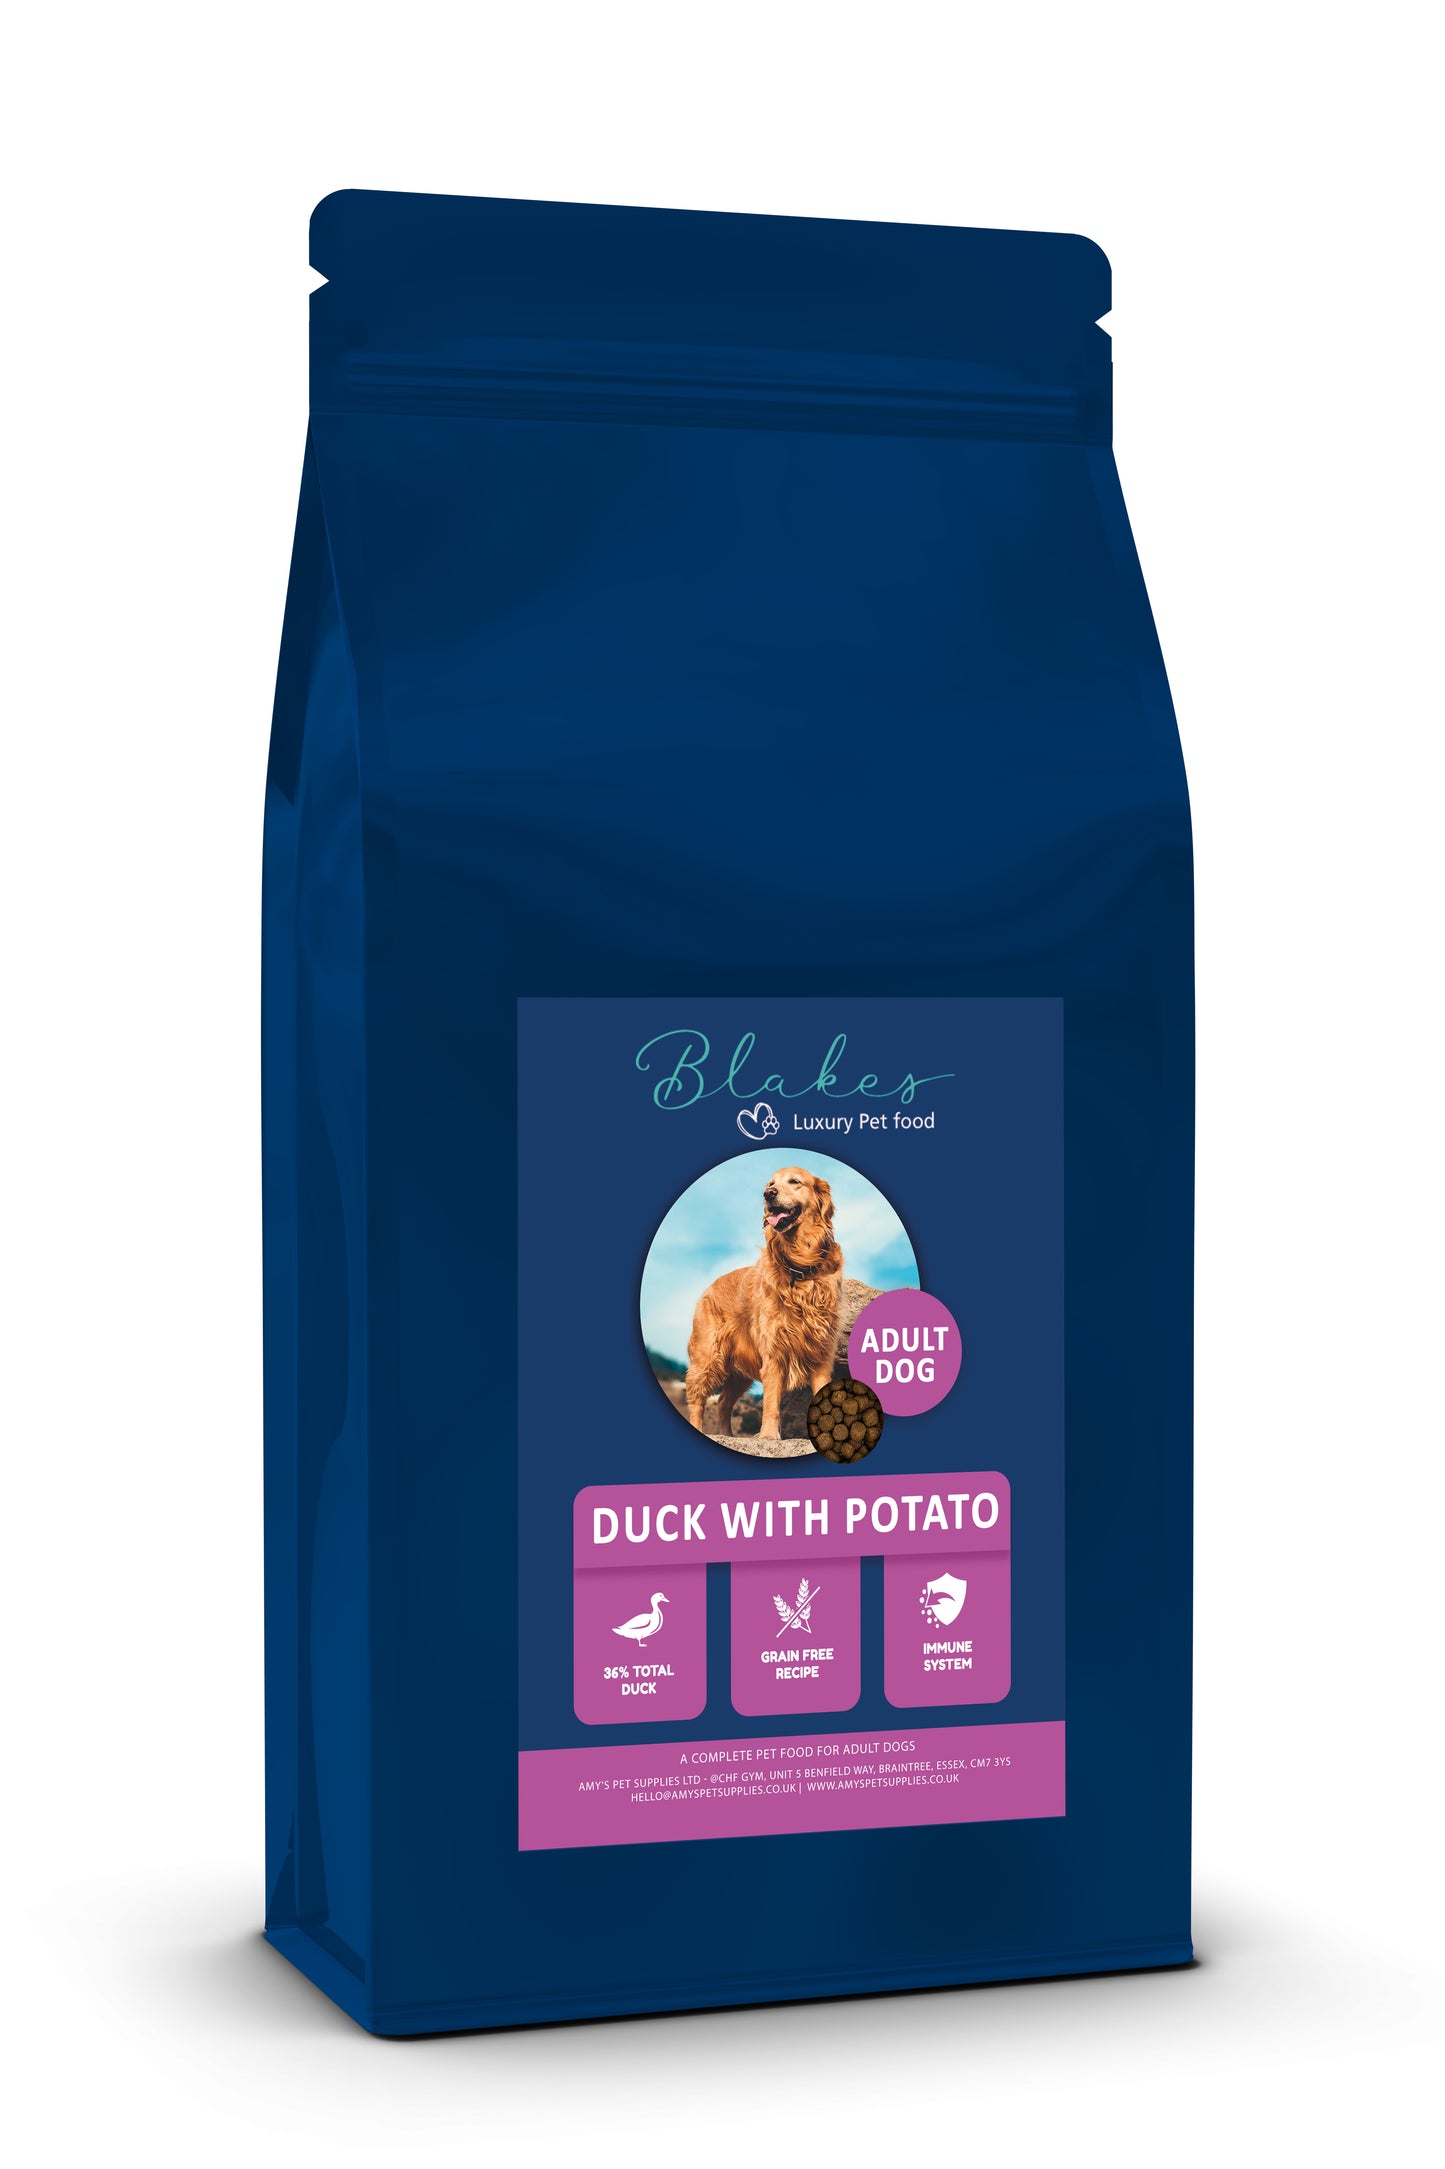 Blakes - Adult Dog - Super Premium Complete Dog Food 10KG